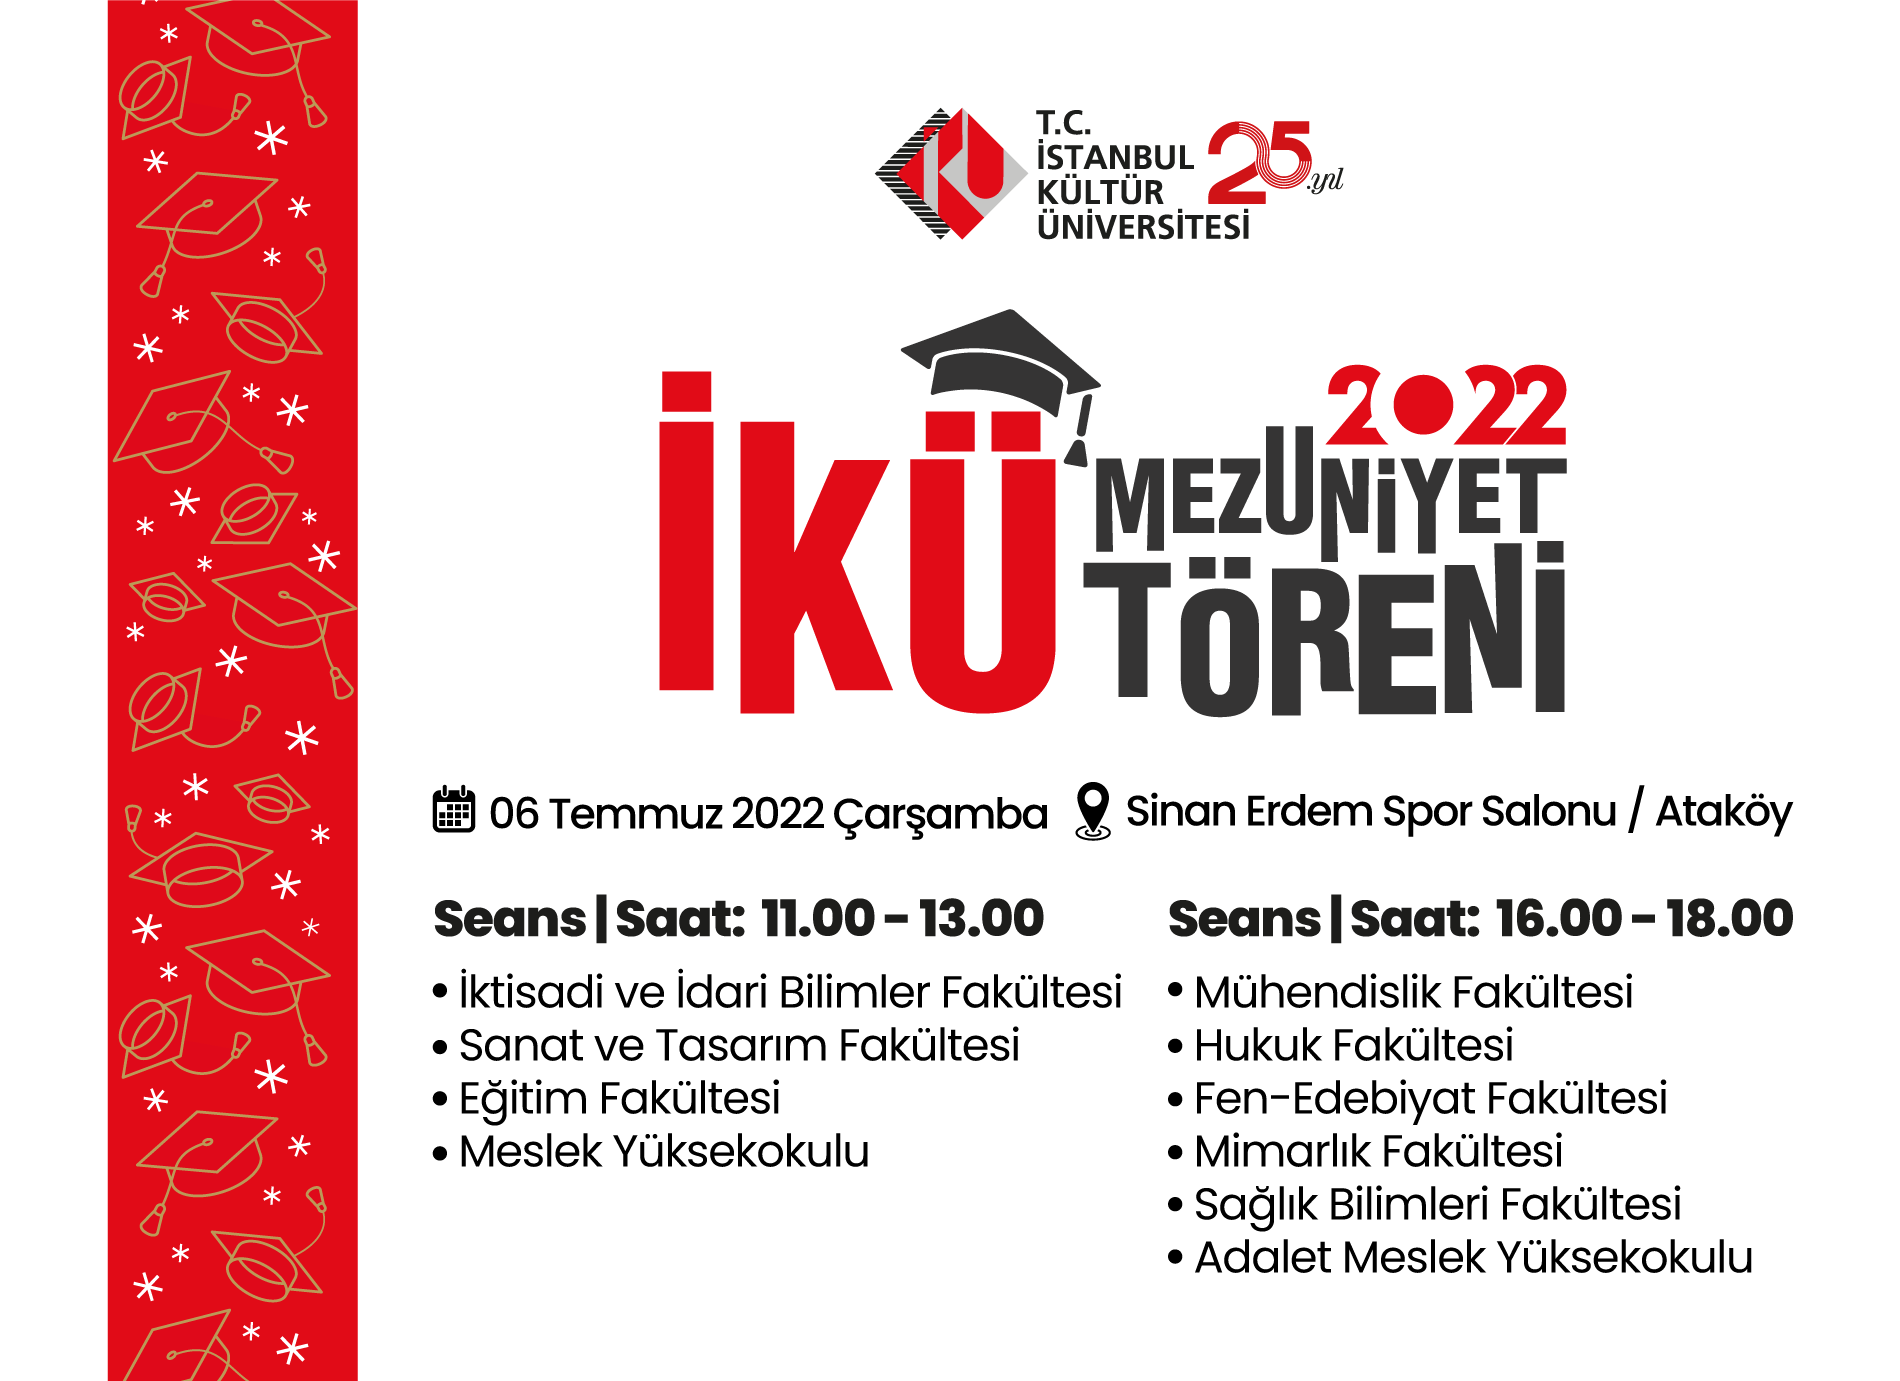 İstanbul Kültür Üniversitesi 2021-2022 Mezuniyet Töreni